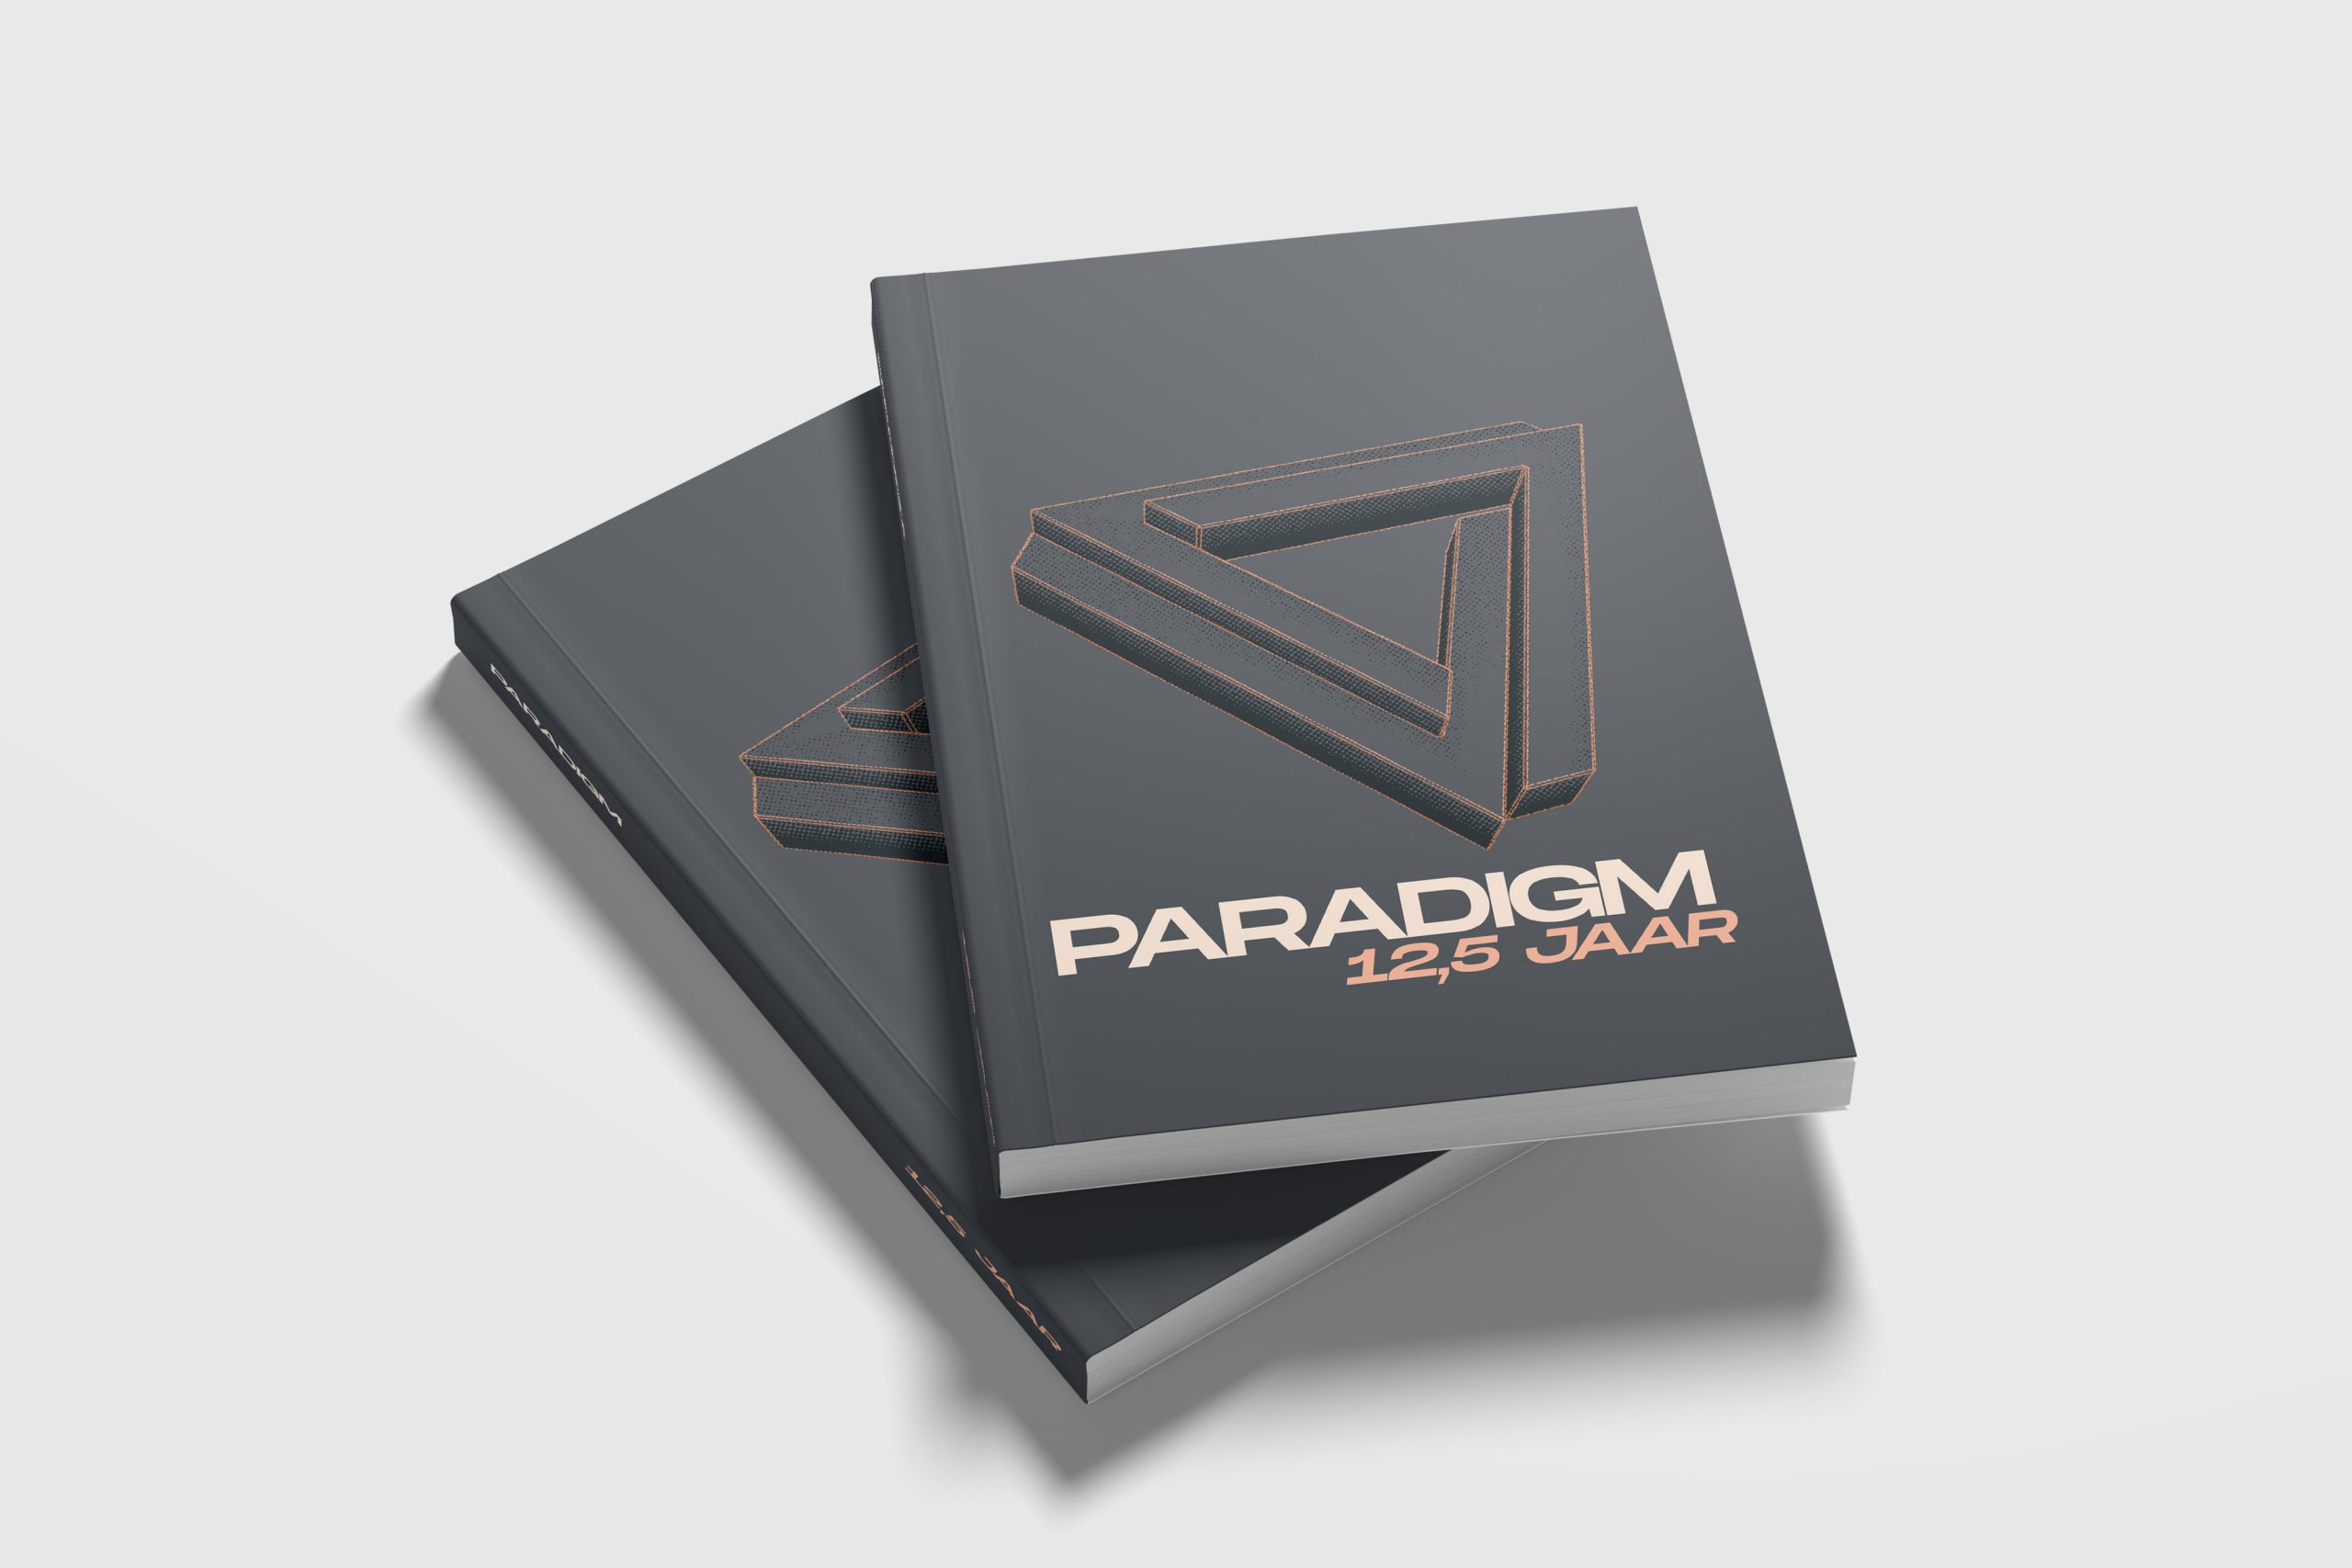 Paradigm 12,5 jaar boek